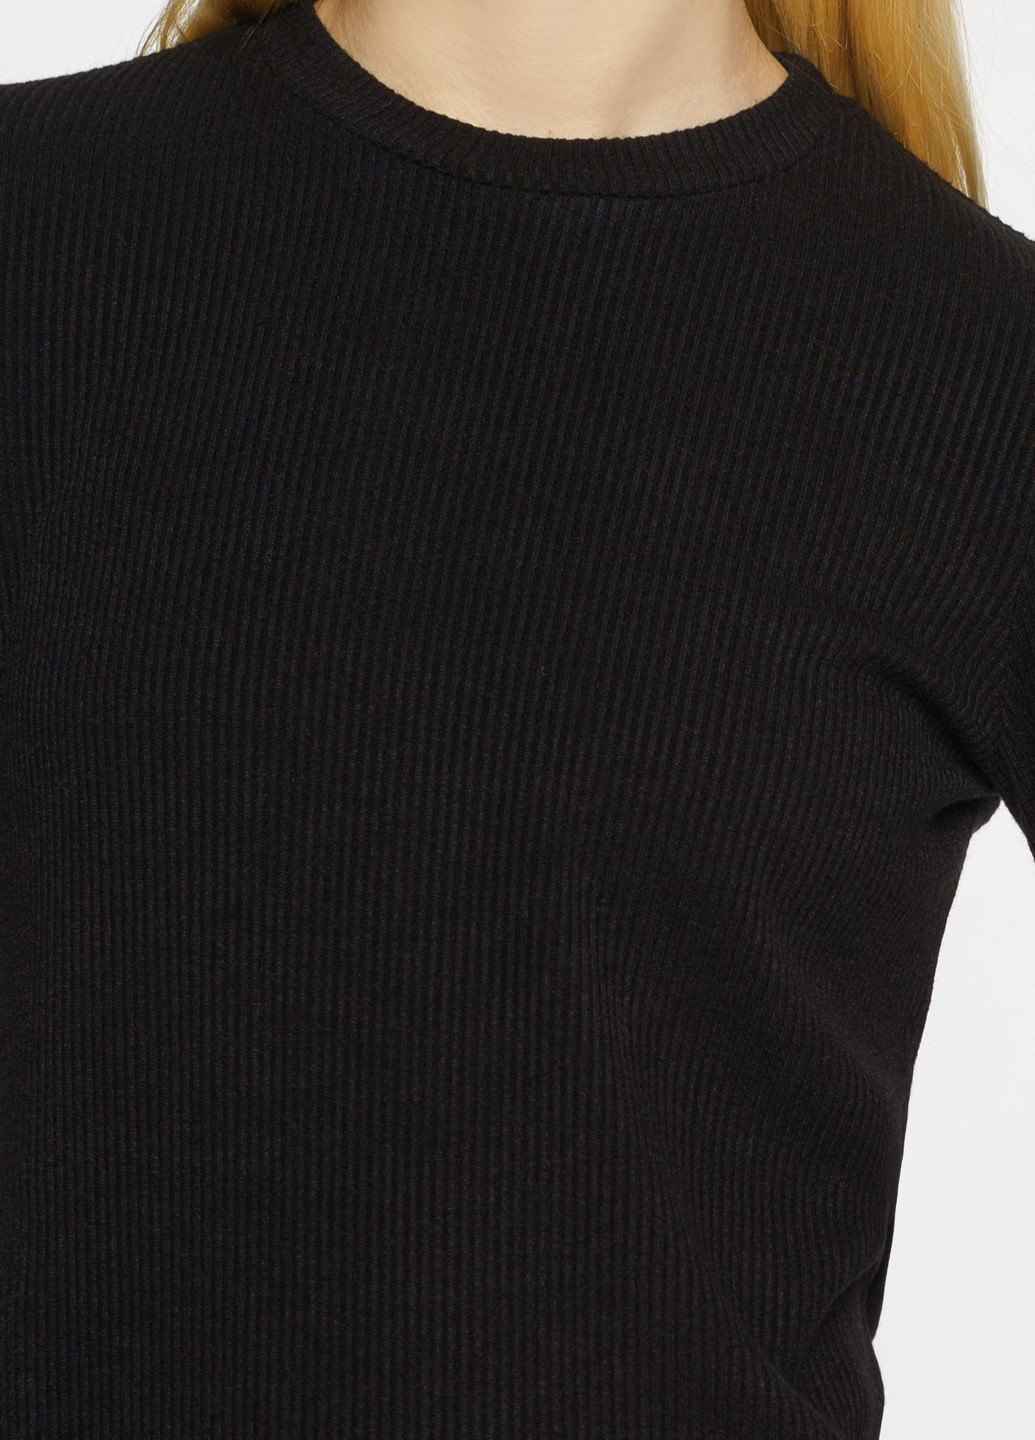 Черная всесезон футболка женская черная Arber Long sleeve jersey W